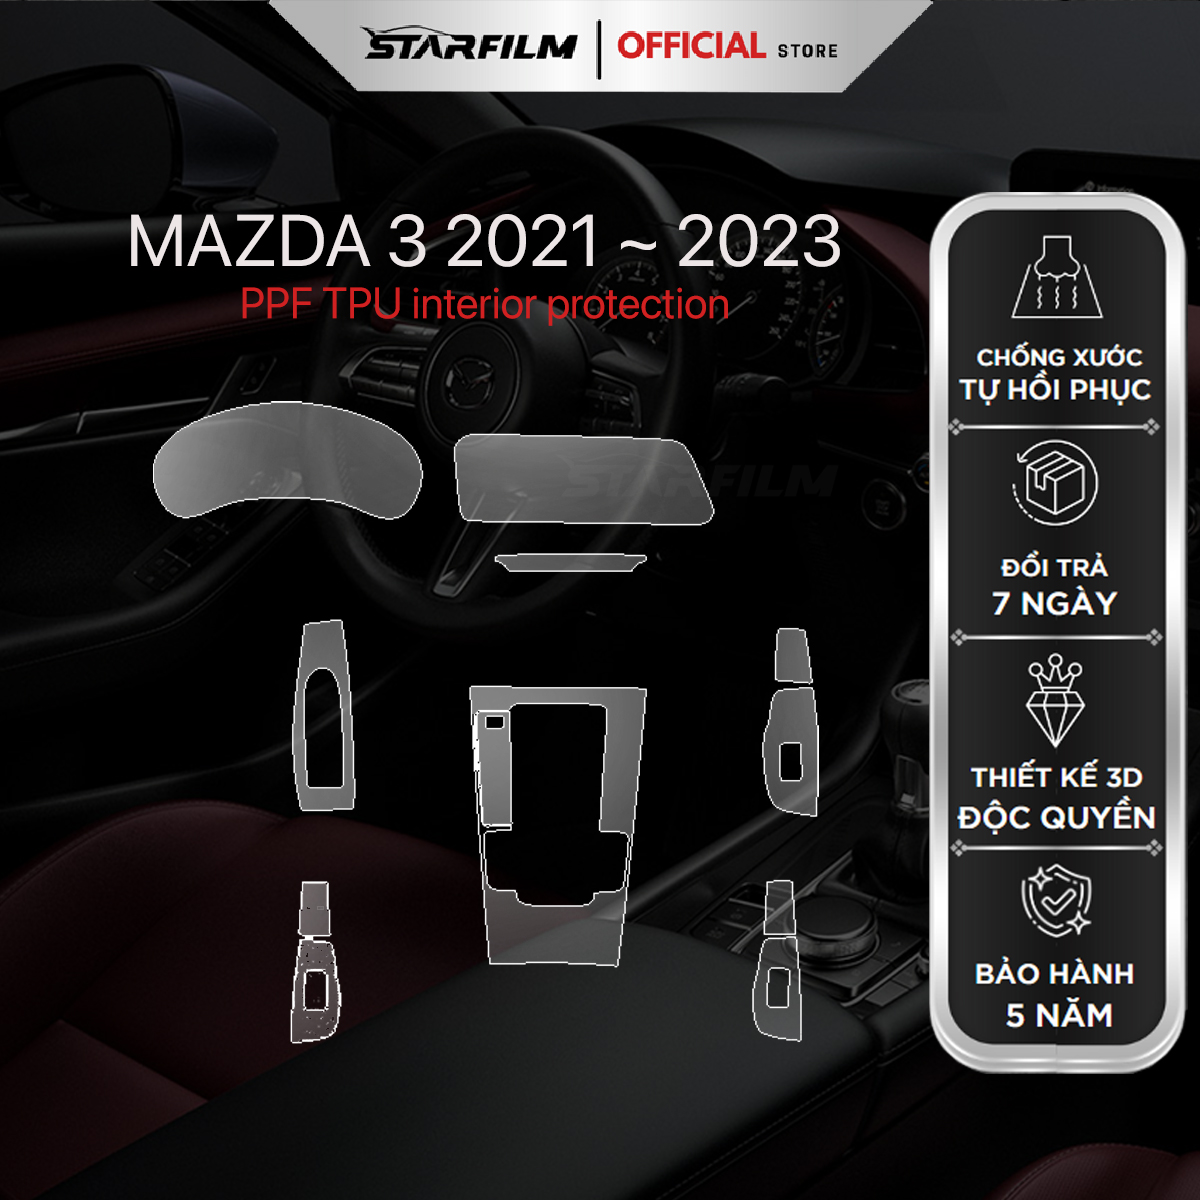 Mazda 3 2021-2024 PPF TPU chống xước tự hồi phục STAR FILM